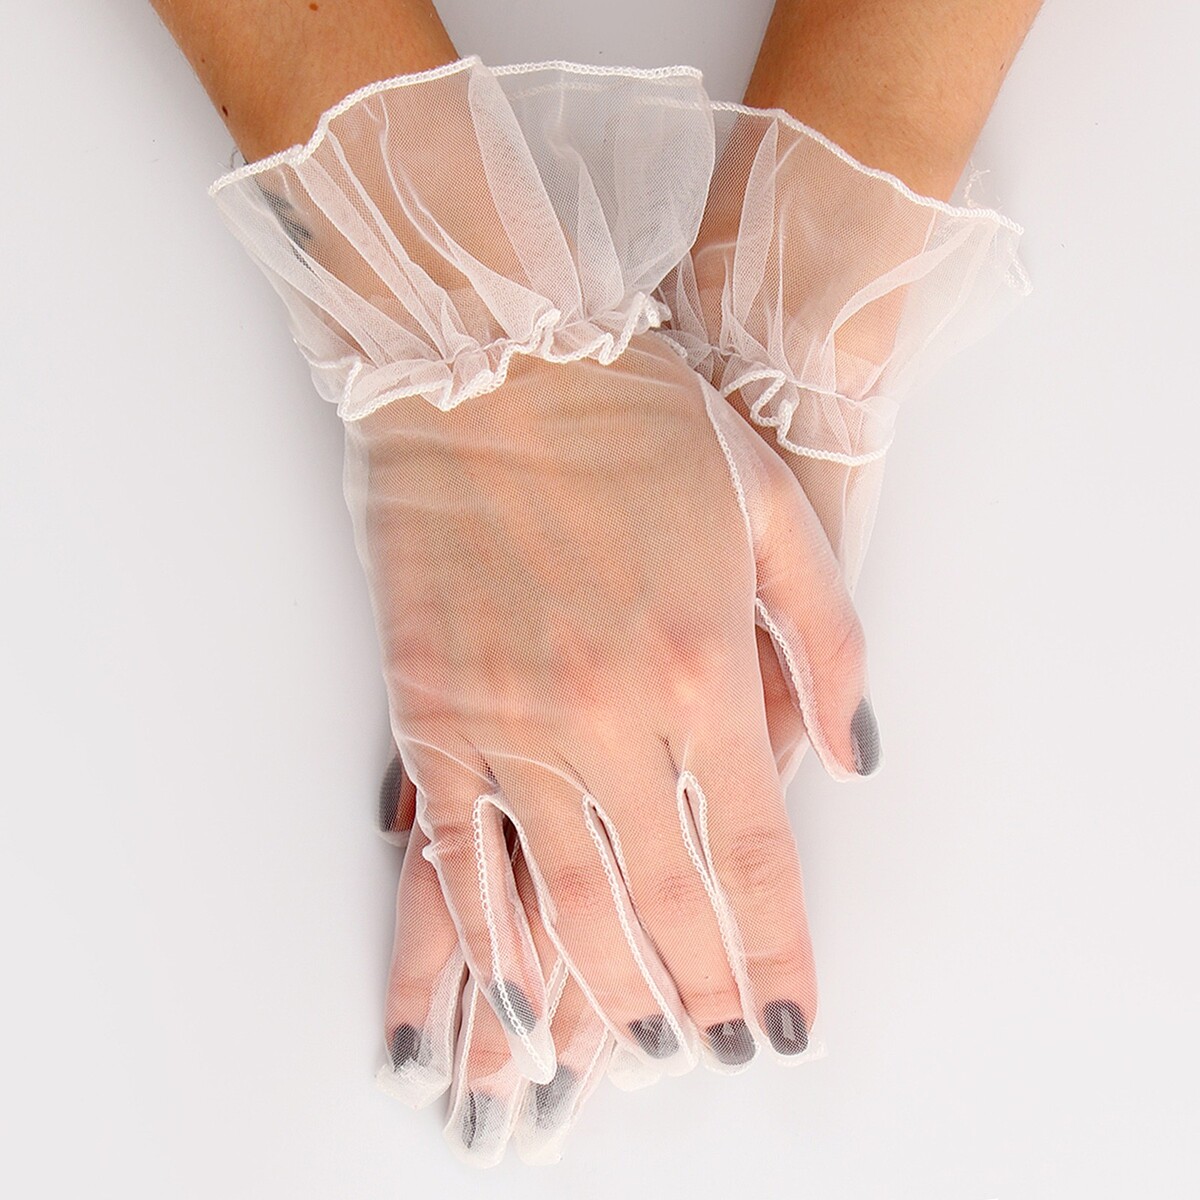 Карнавальный аксессуар - перчатки прозрачные с юбочкой, цвет белый карнавальный аксессуар перчатки прозрачные белый